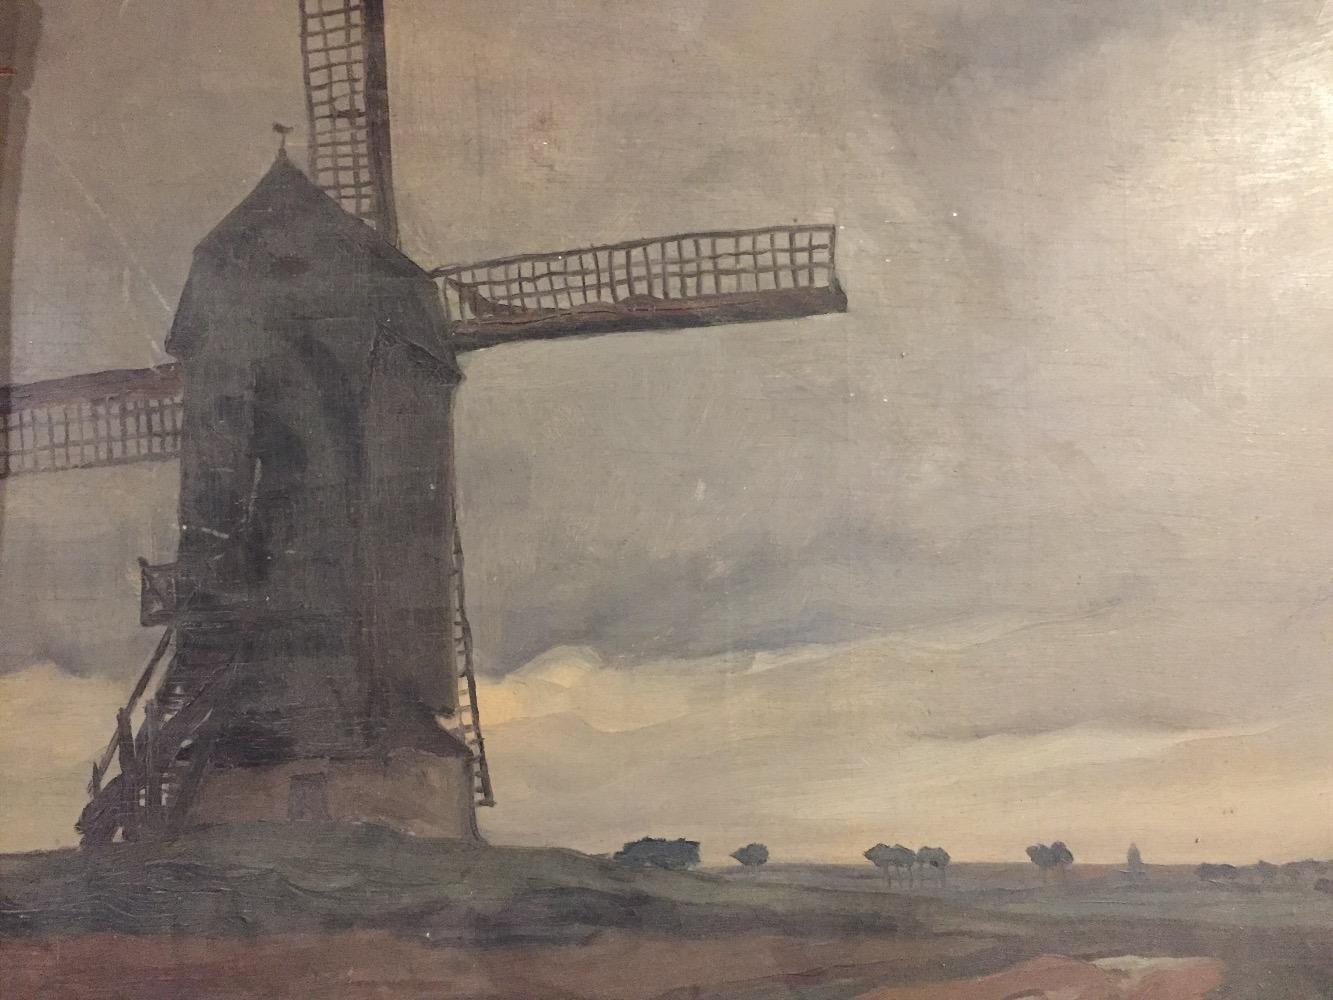 Windmill in Flanders